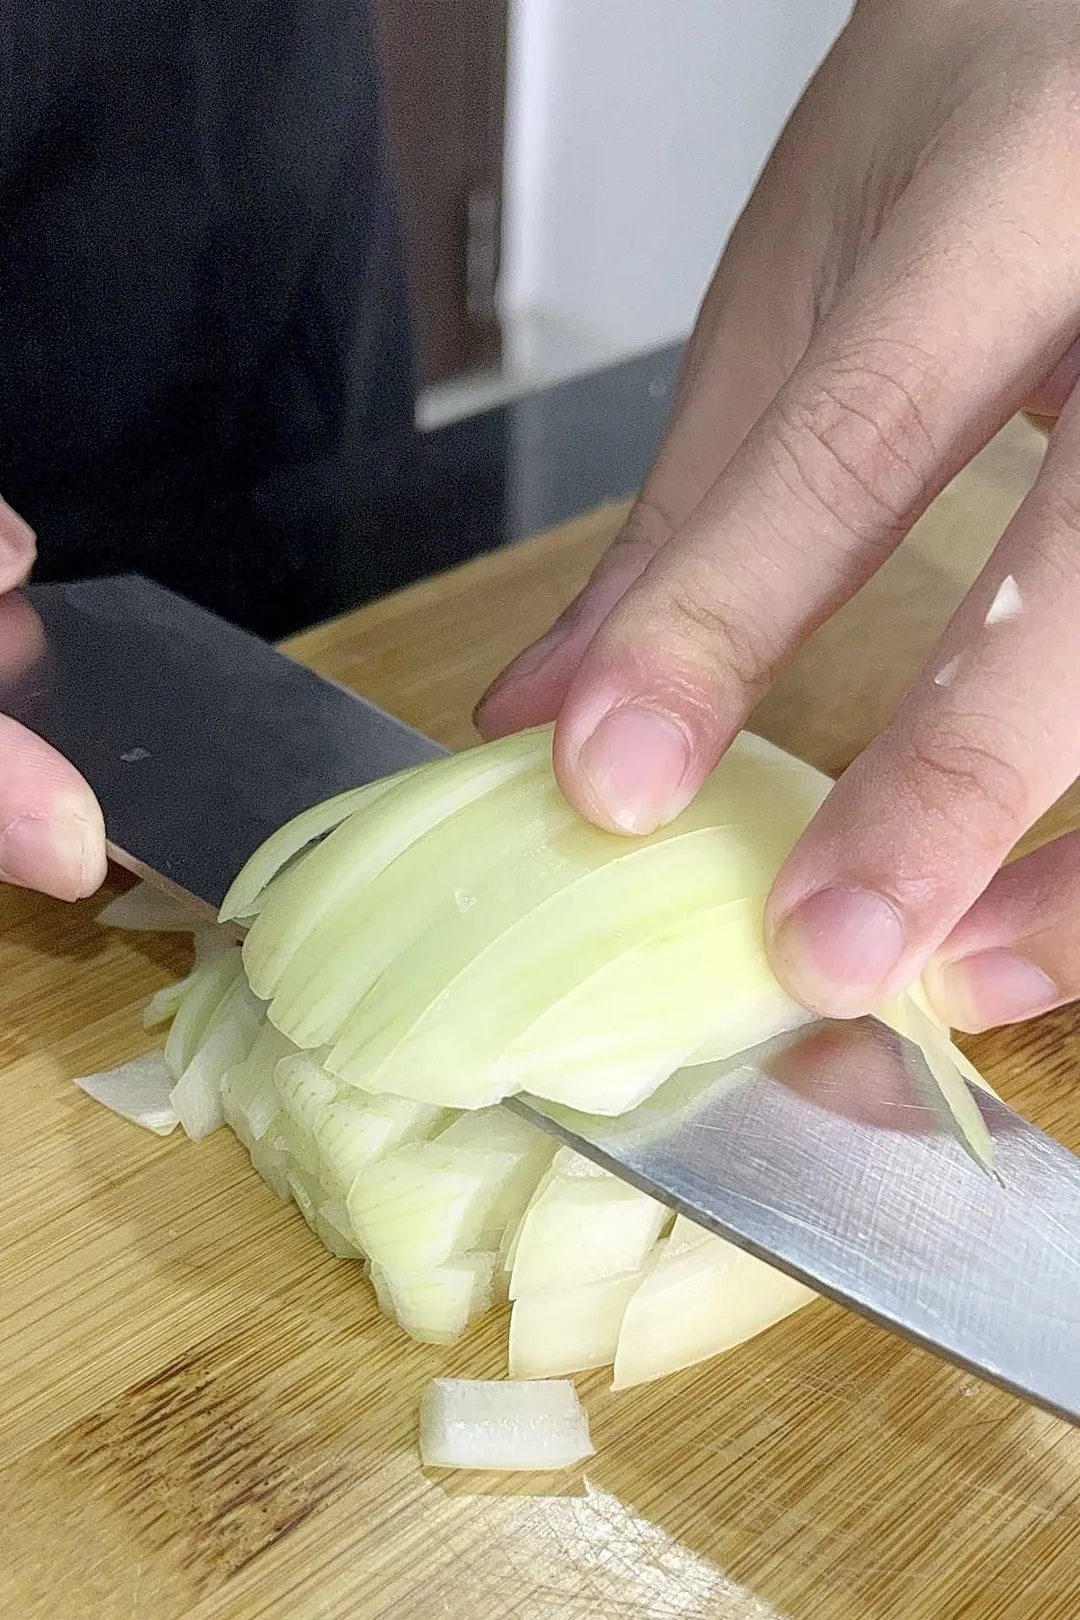 chopping a half onion on cutting board